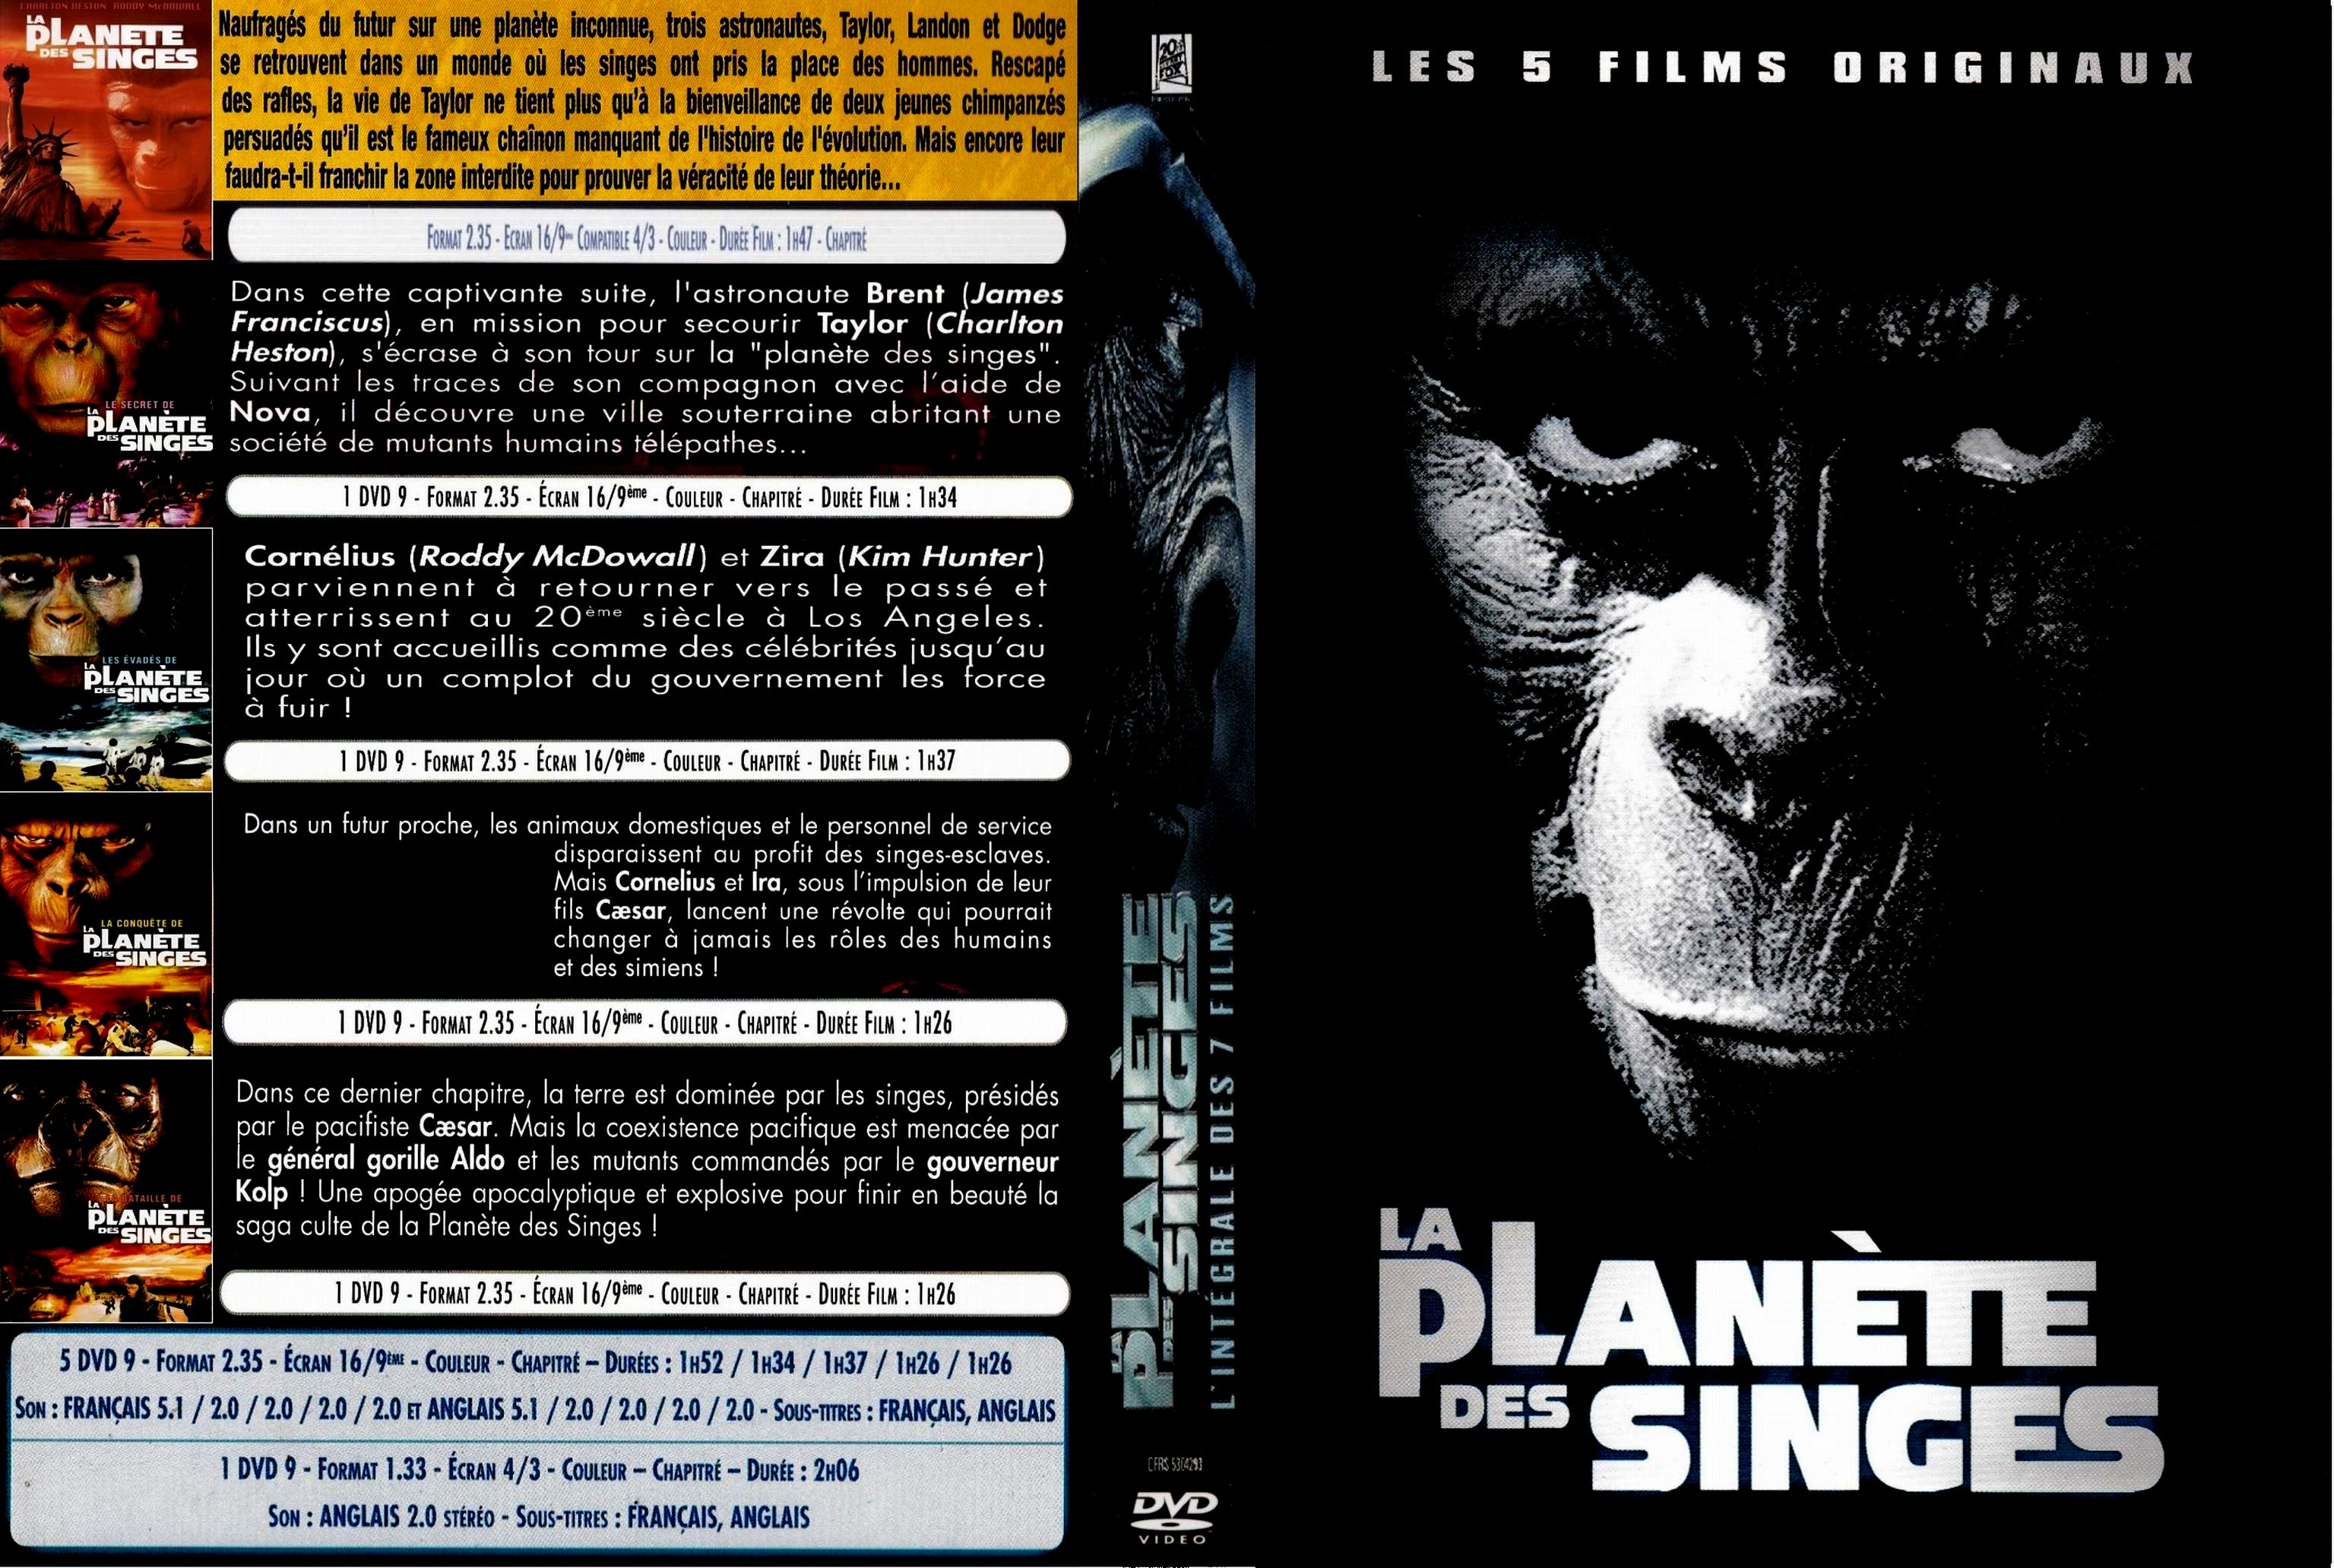 Jaquette DVD Planetes des singes Collection